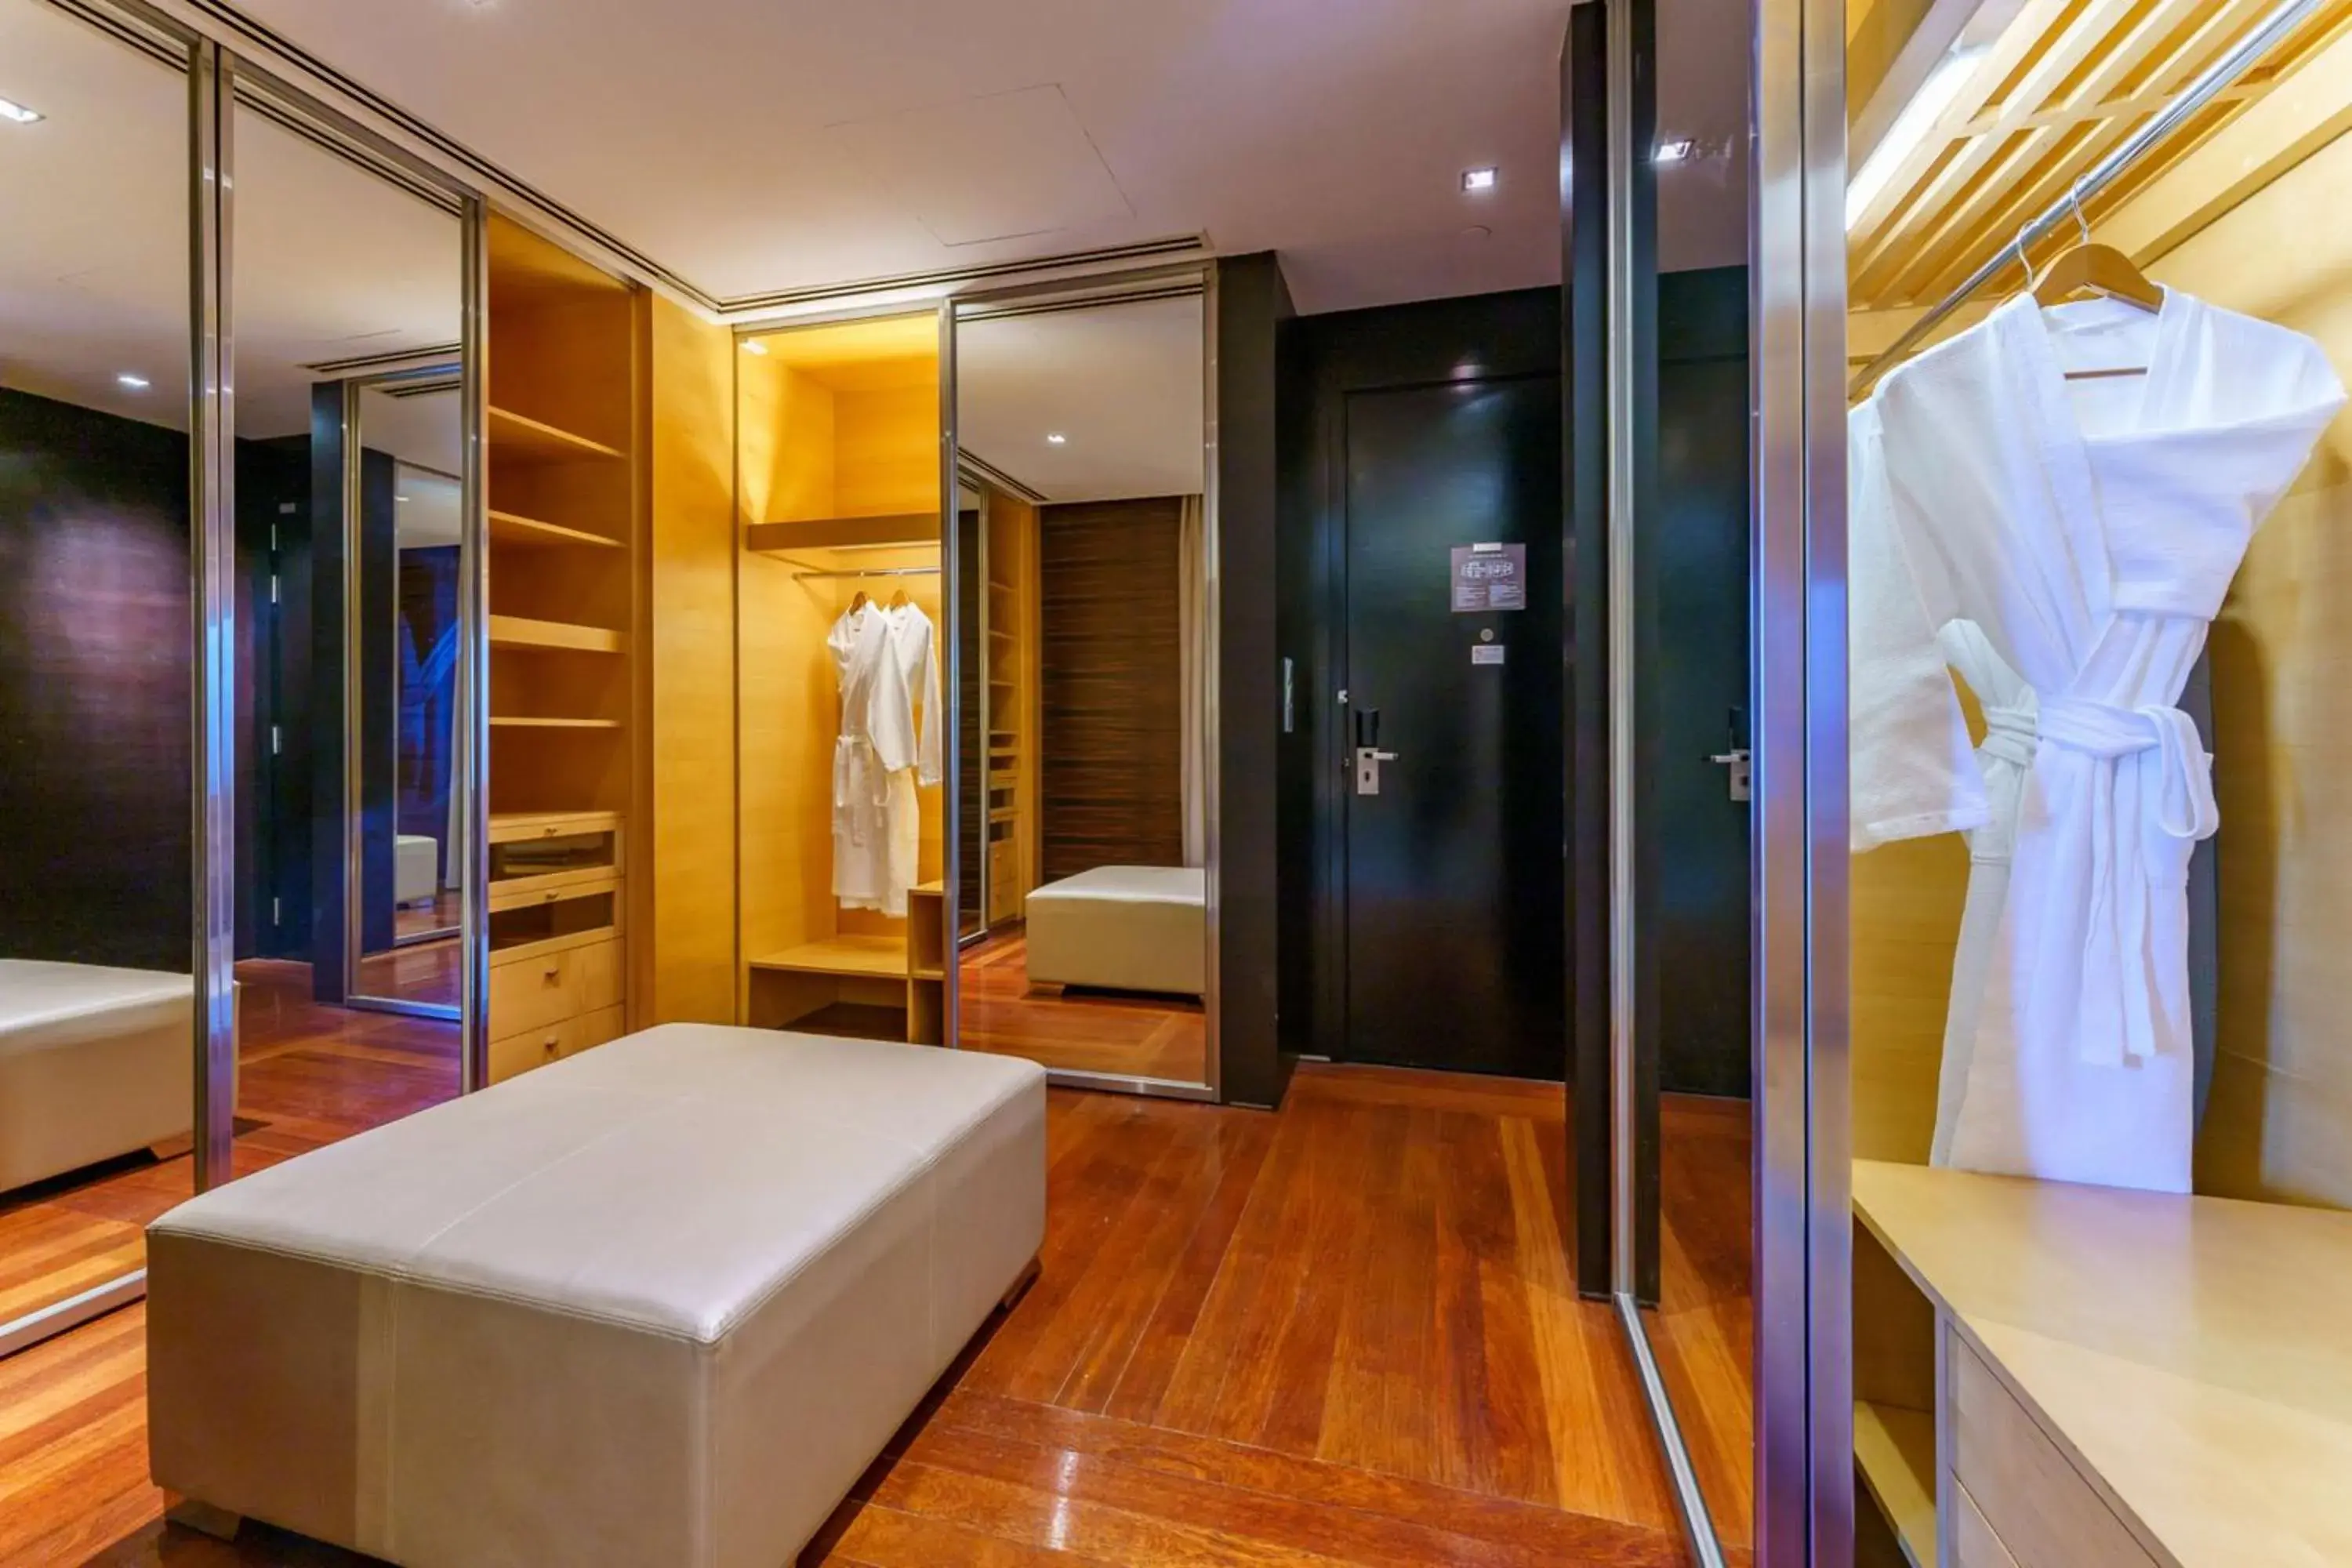 Photo of the whole room, Bathroom in Hilton Kuala Lumpur